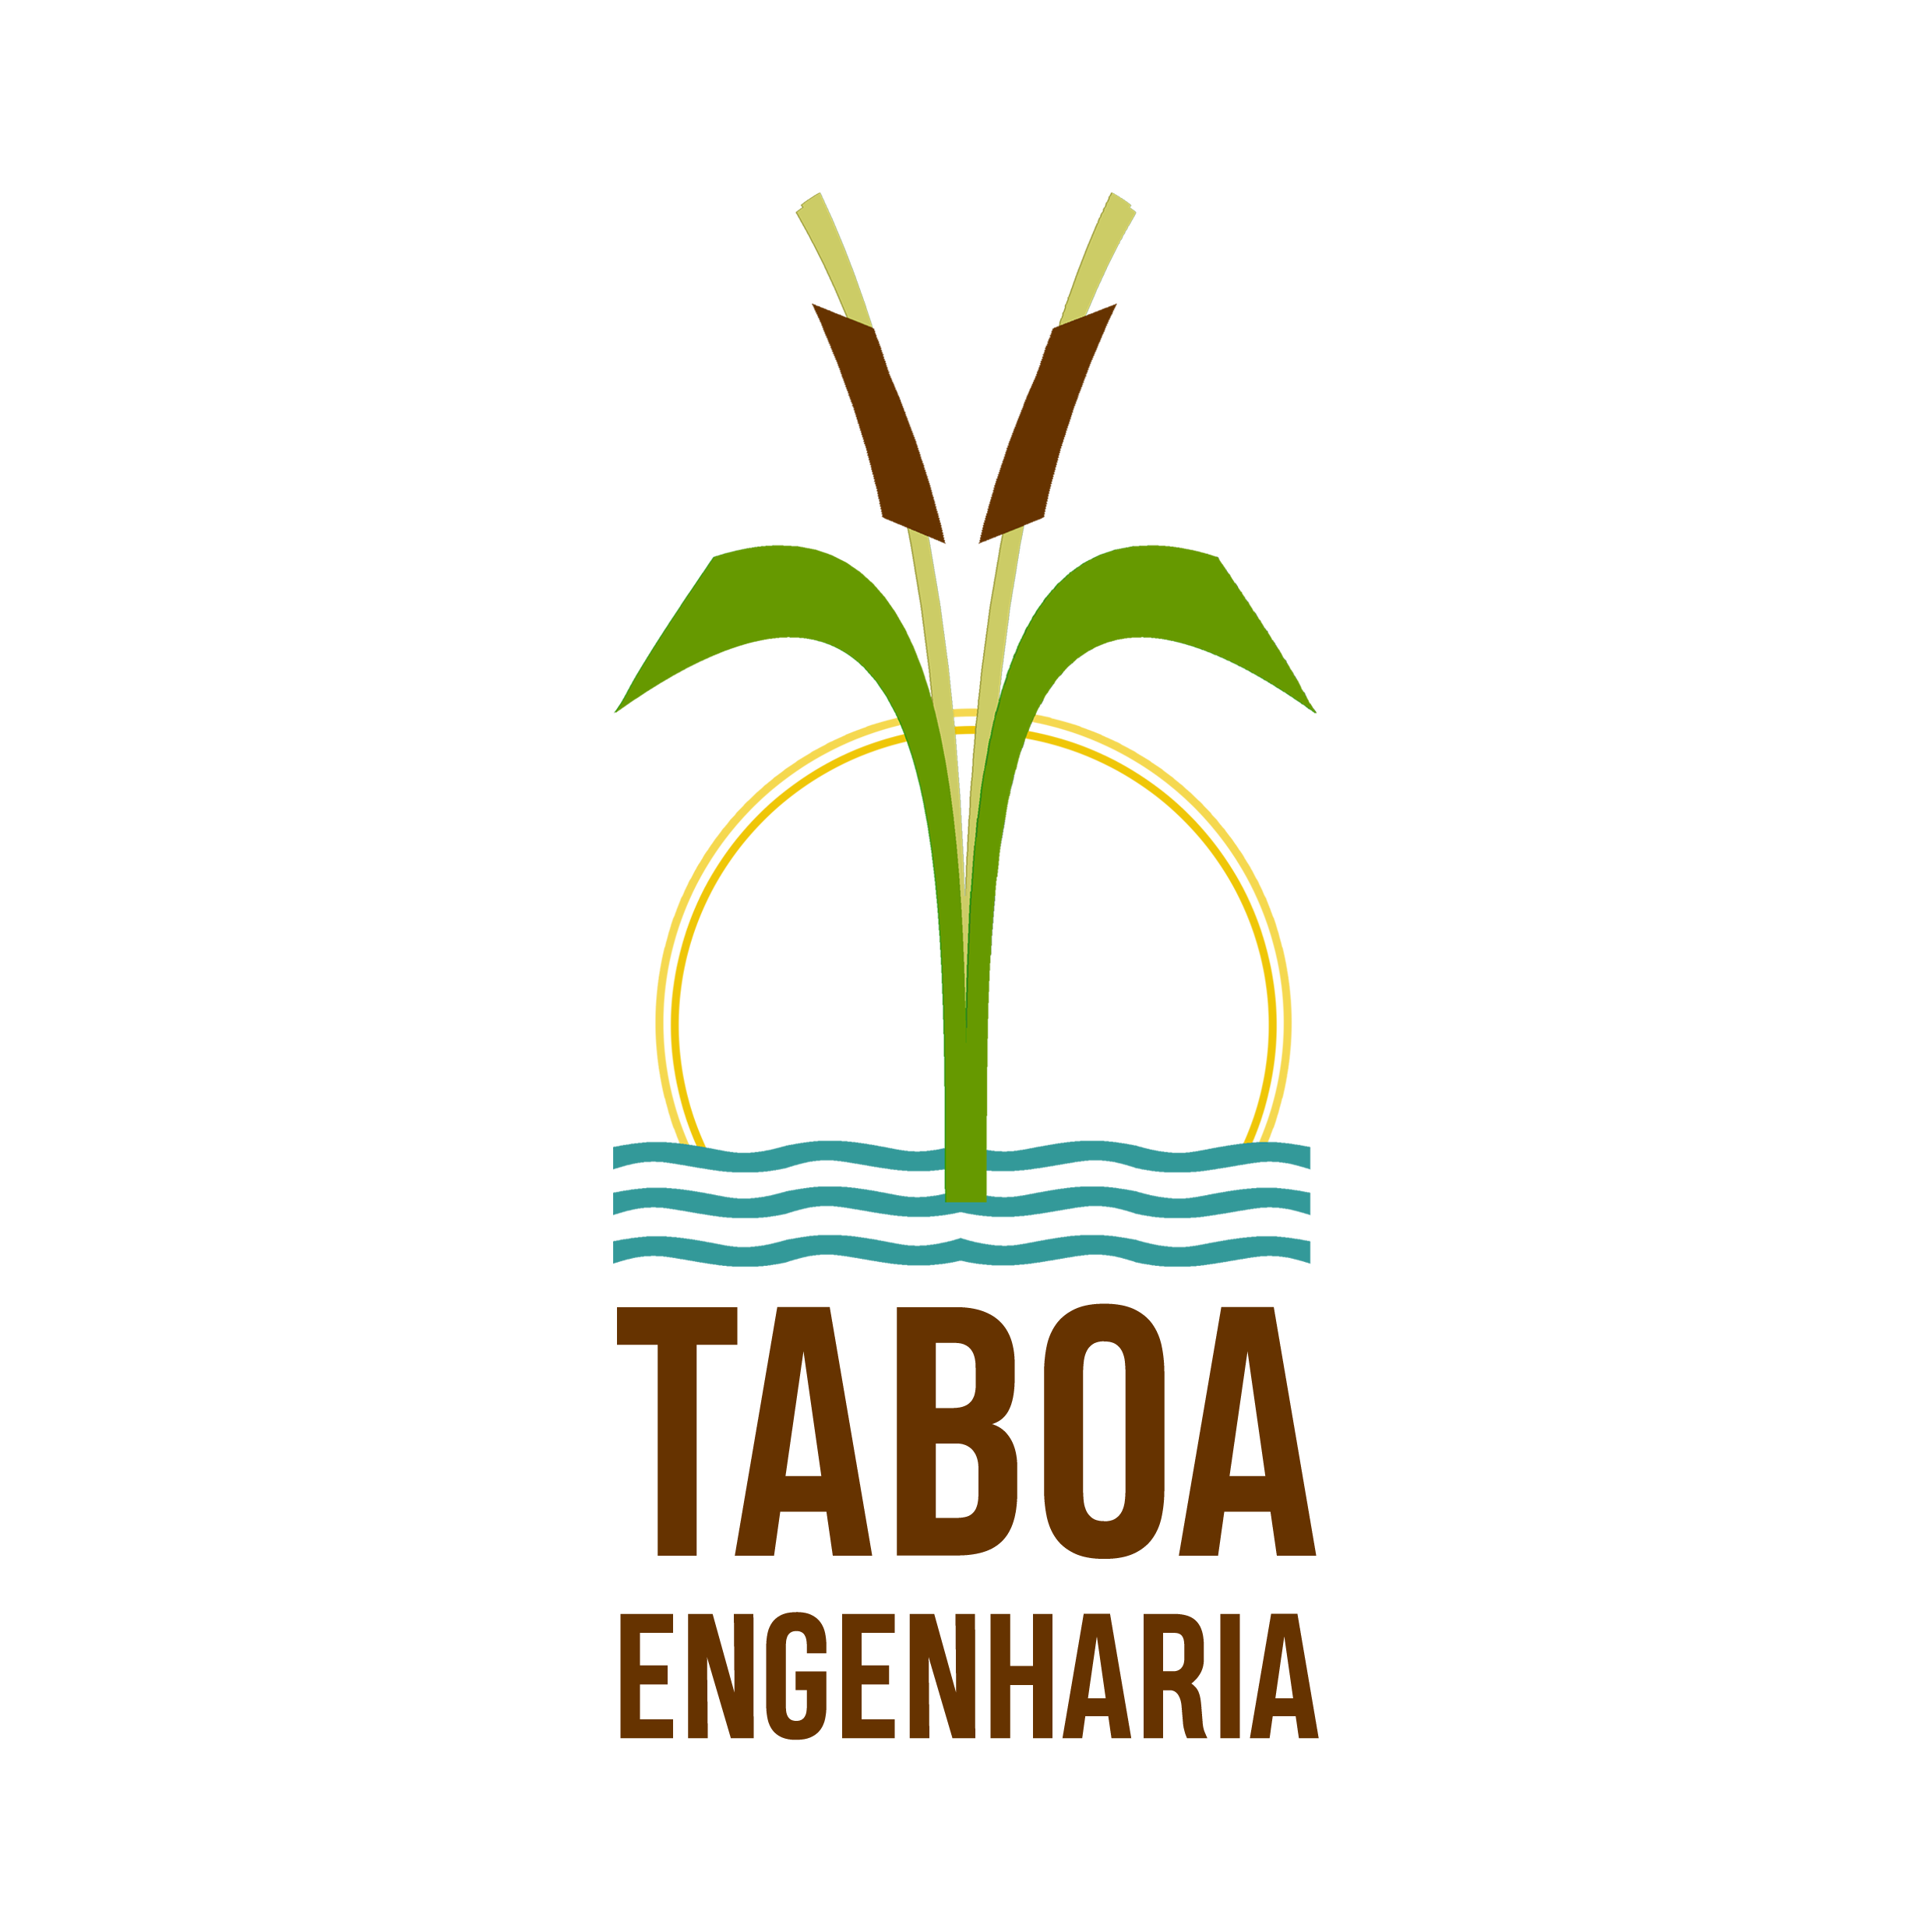 Logo Taboa Engenharia (1).png